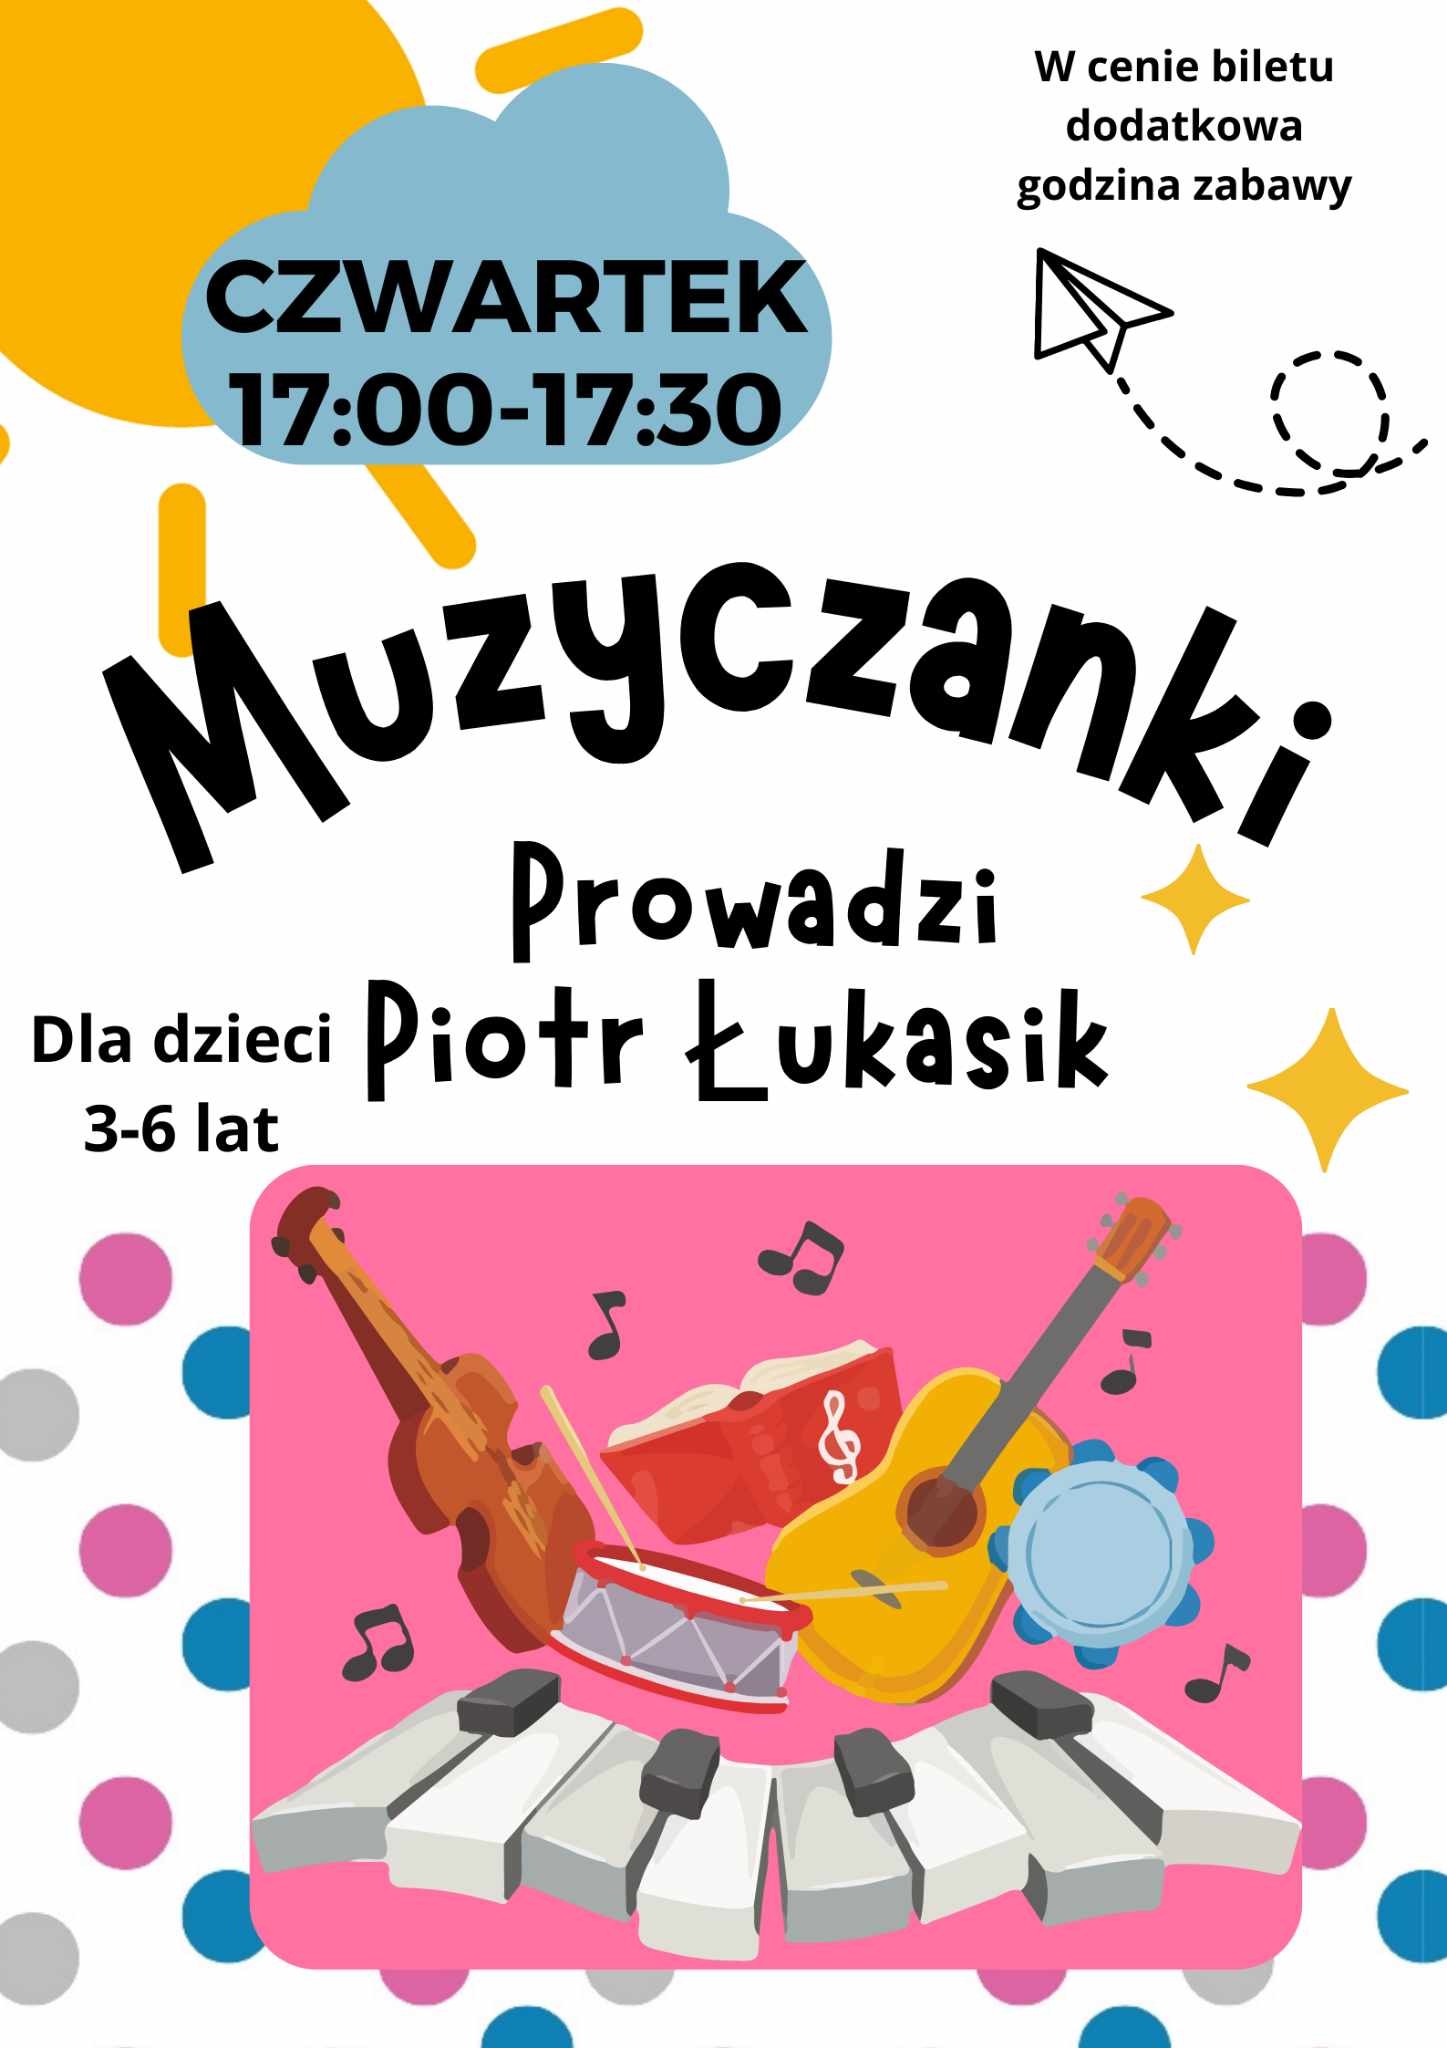 Zajęcia dla dzieci Muzyczanki zajęcia umuzykaniające dla przedszkolaków (kolejny etap po gordonkach) w Warszawie